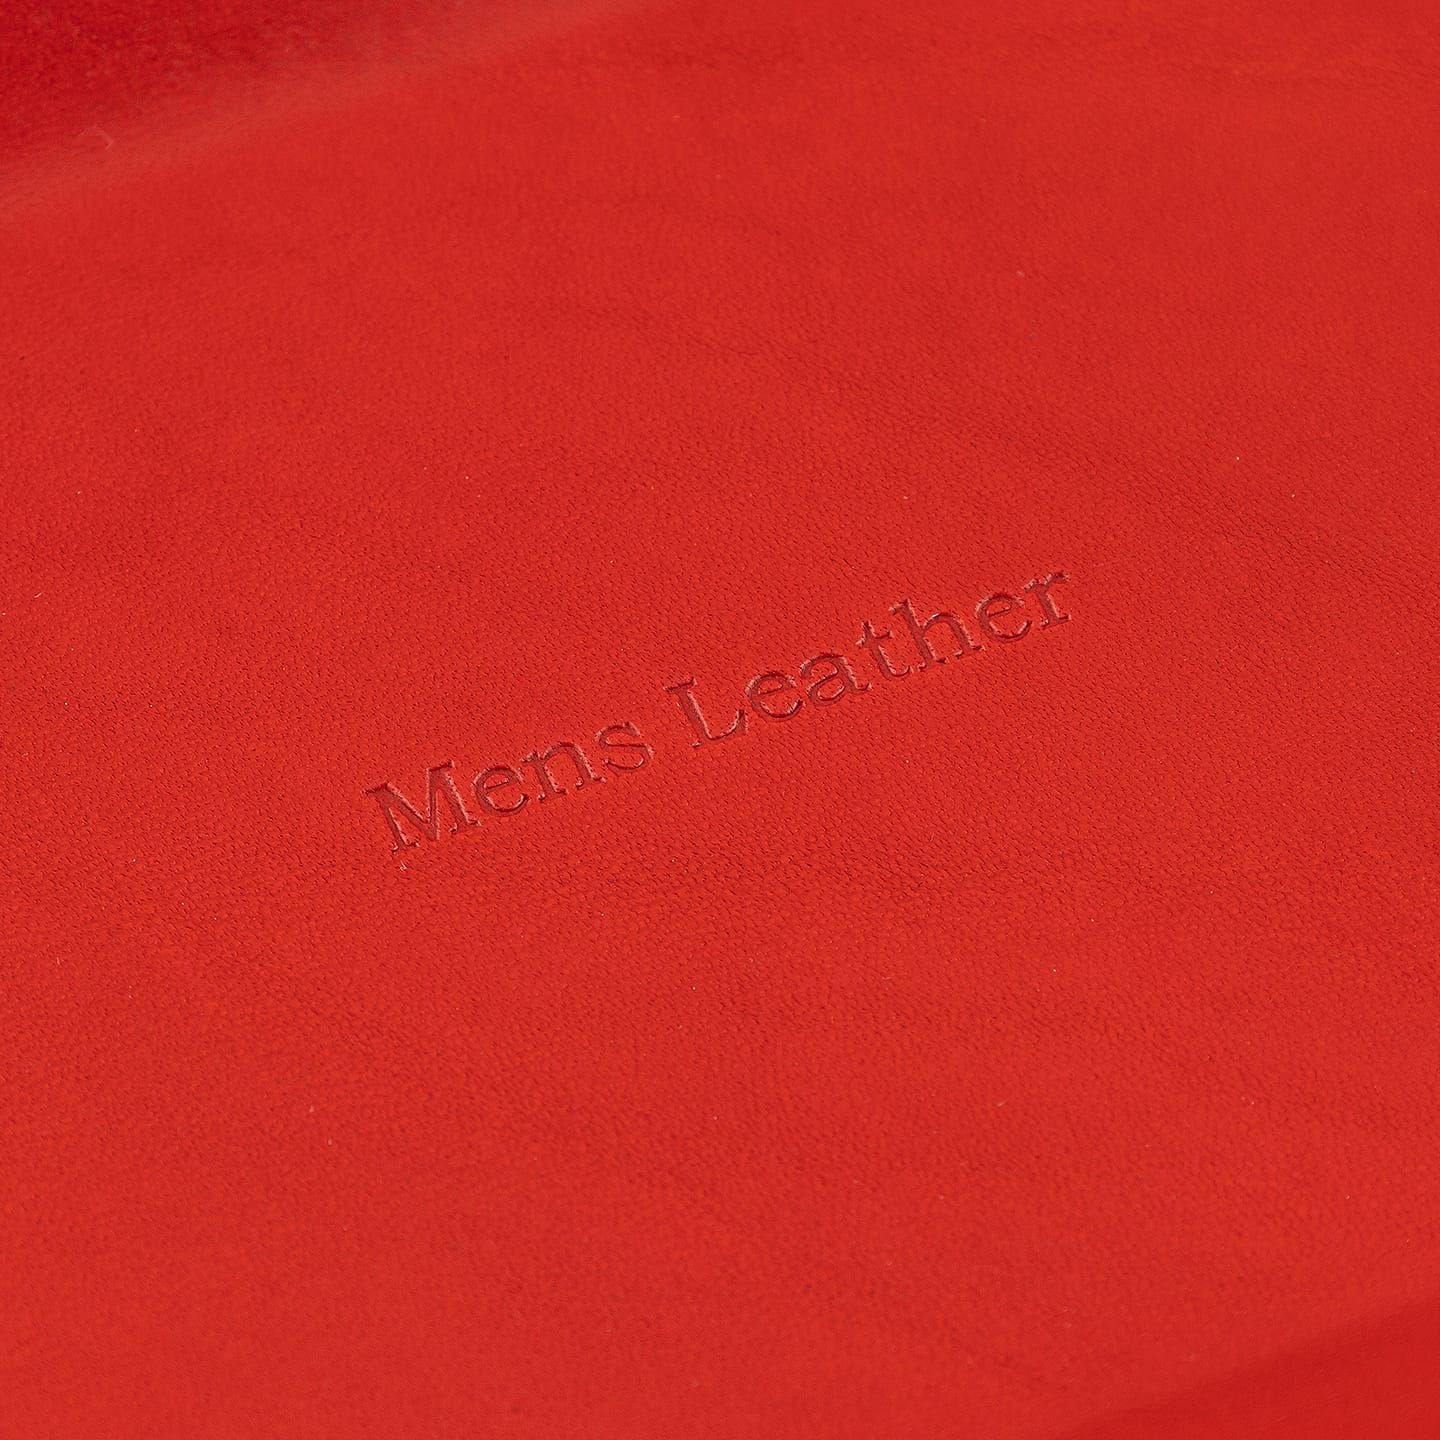 表面（イングラサット）：Red、裏面（マルゴー）： Black、糸色：Chocolate、名入れ刻印：素押し、名入れ文字：Mens Leather